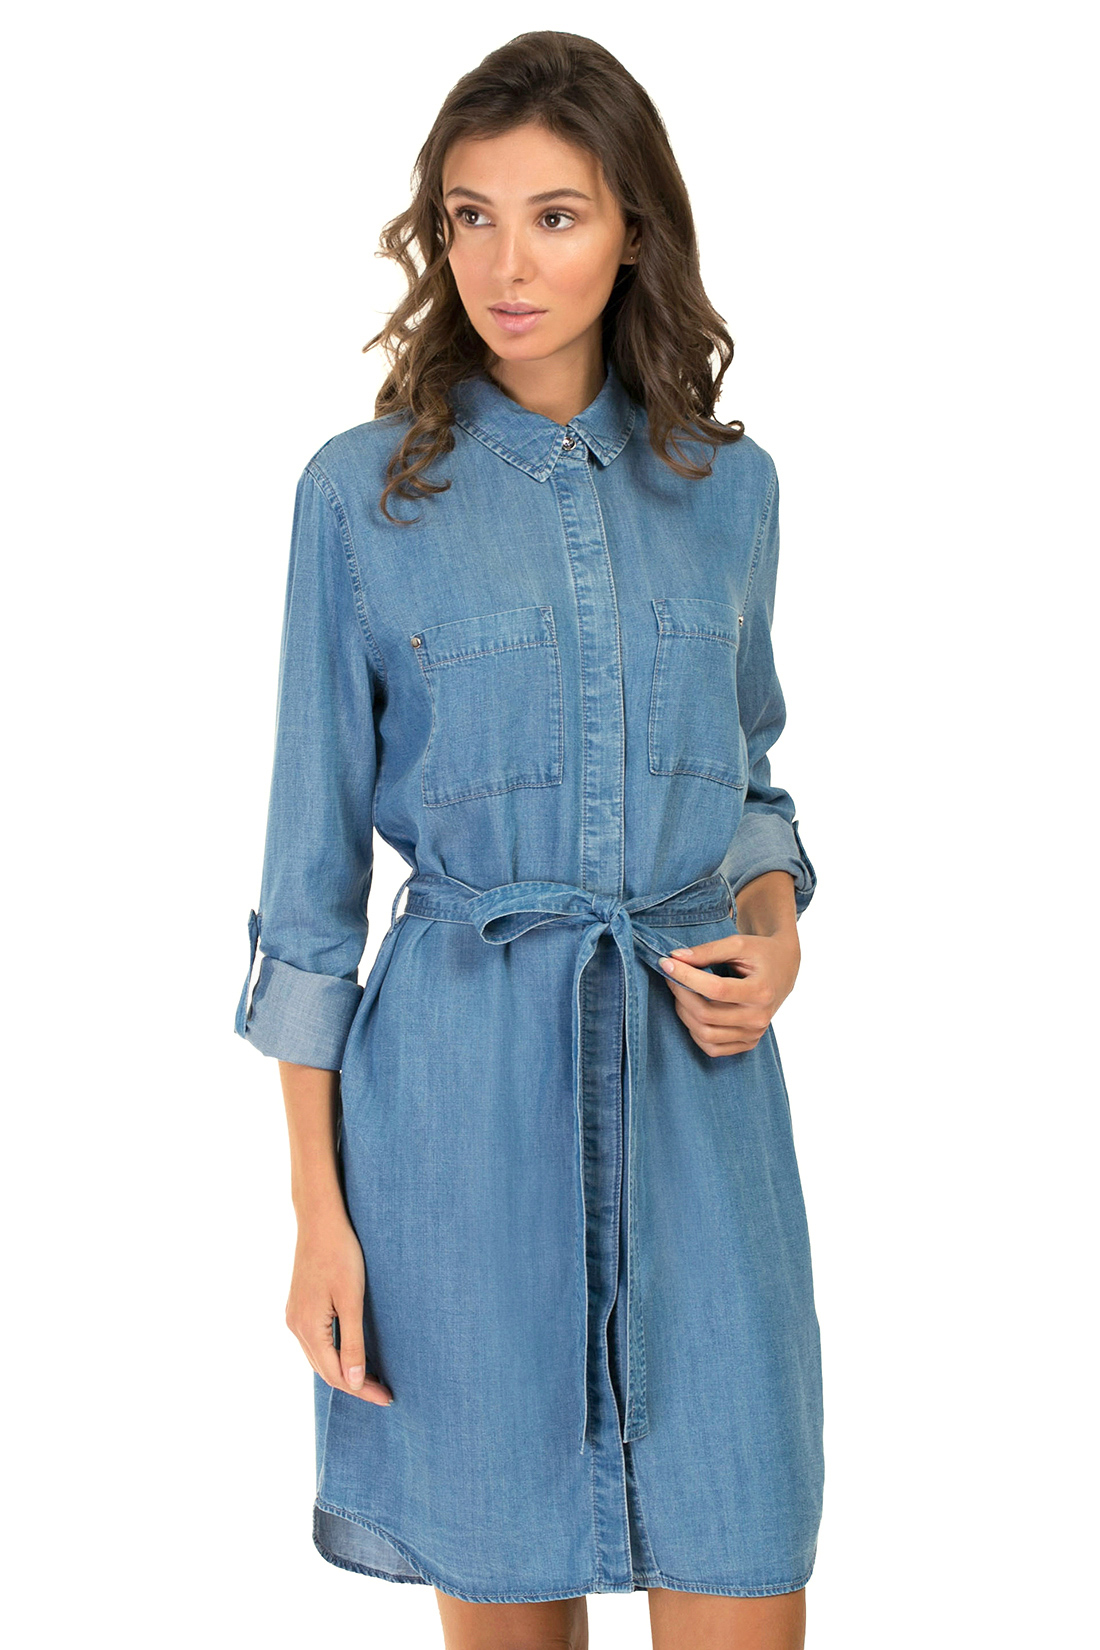 Платье-рубашка из денима (арт. baon B457088), размер L, цвет blue denim#голубой Платье-рубашка из денима (арт. baon B457088) - фото 5